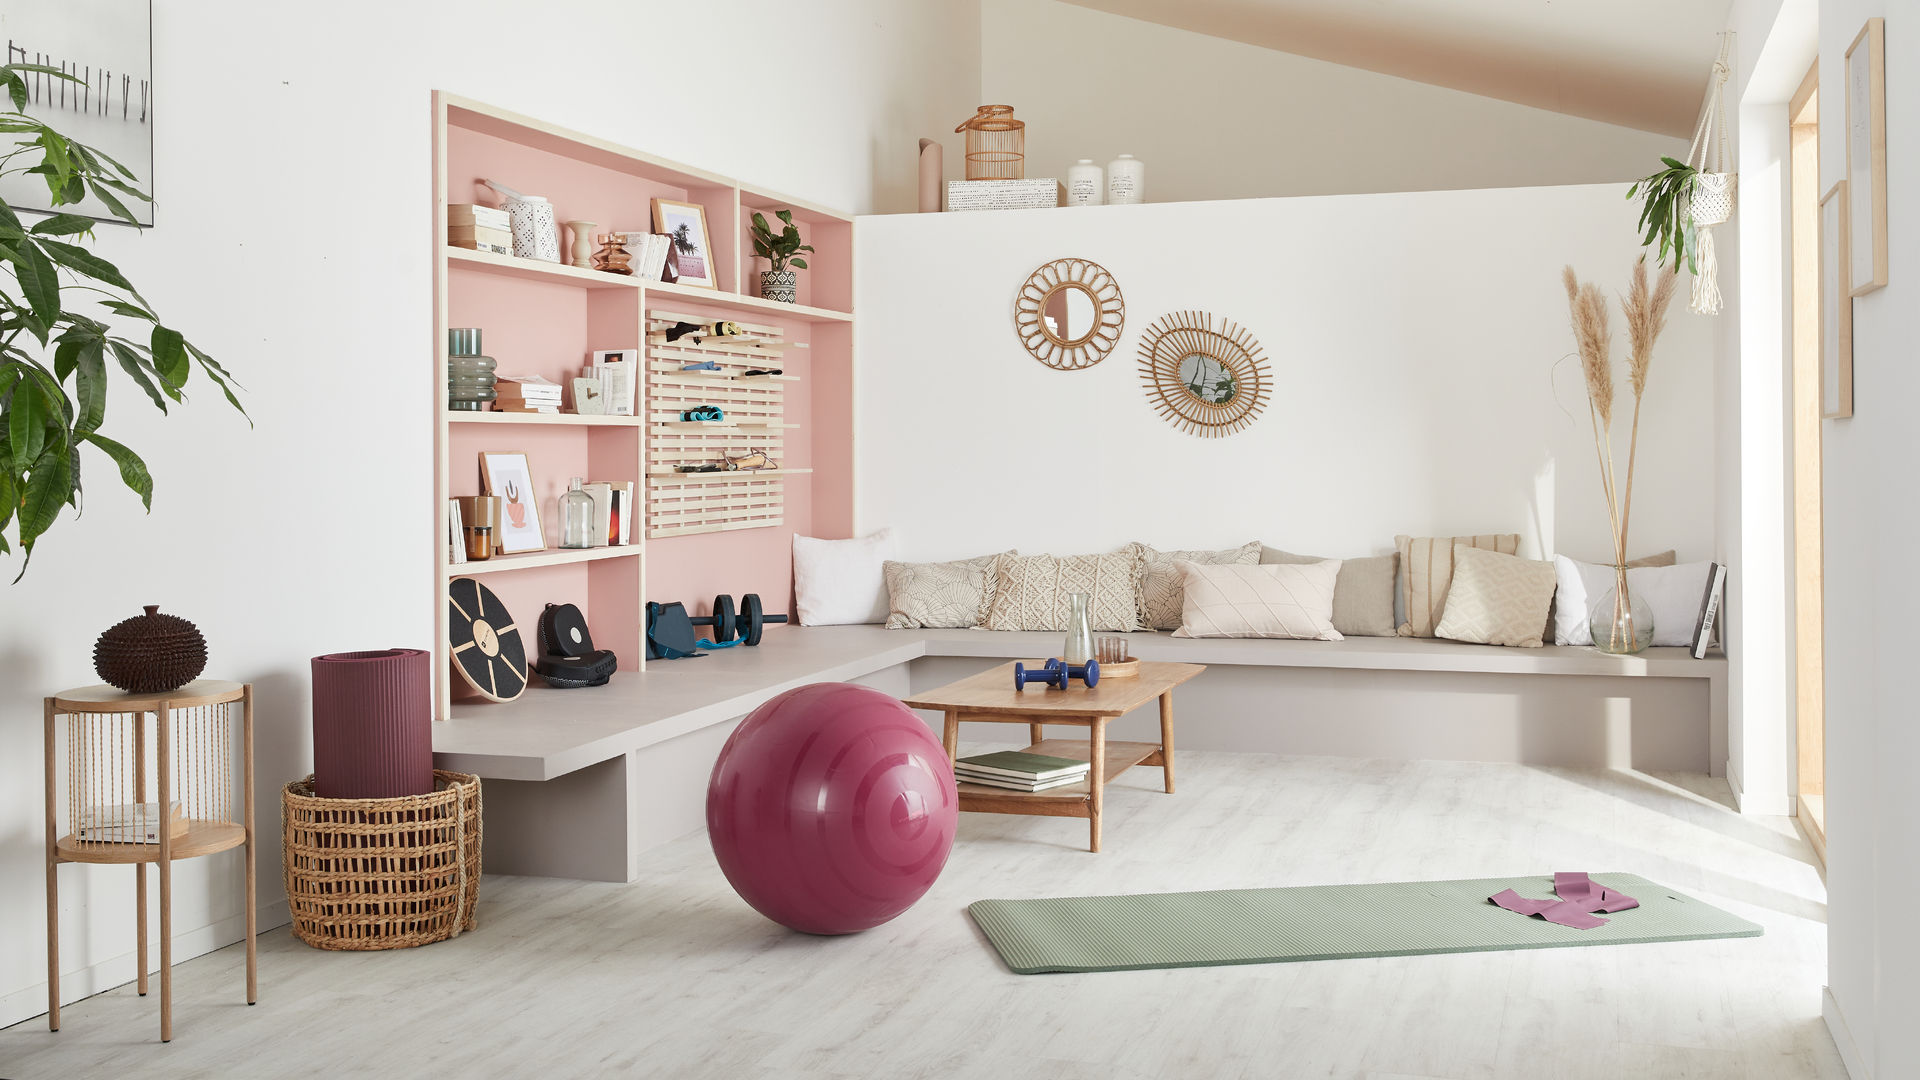 Hoe tover je jouw huis om tot een home gym?